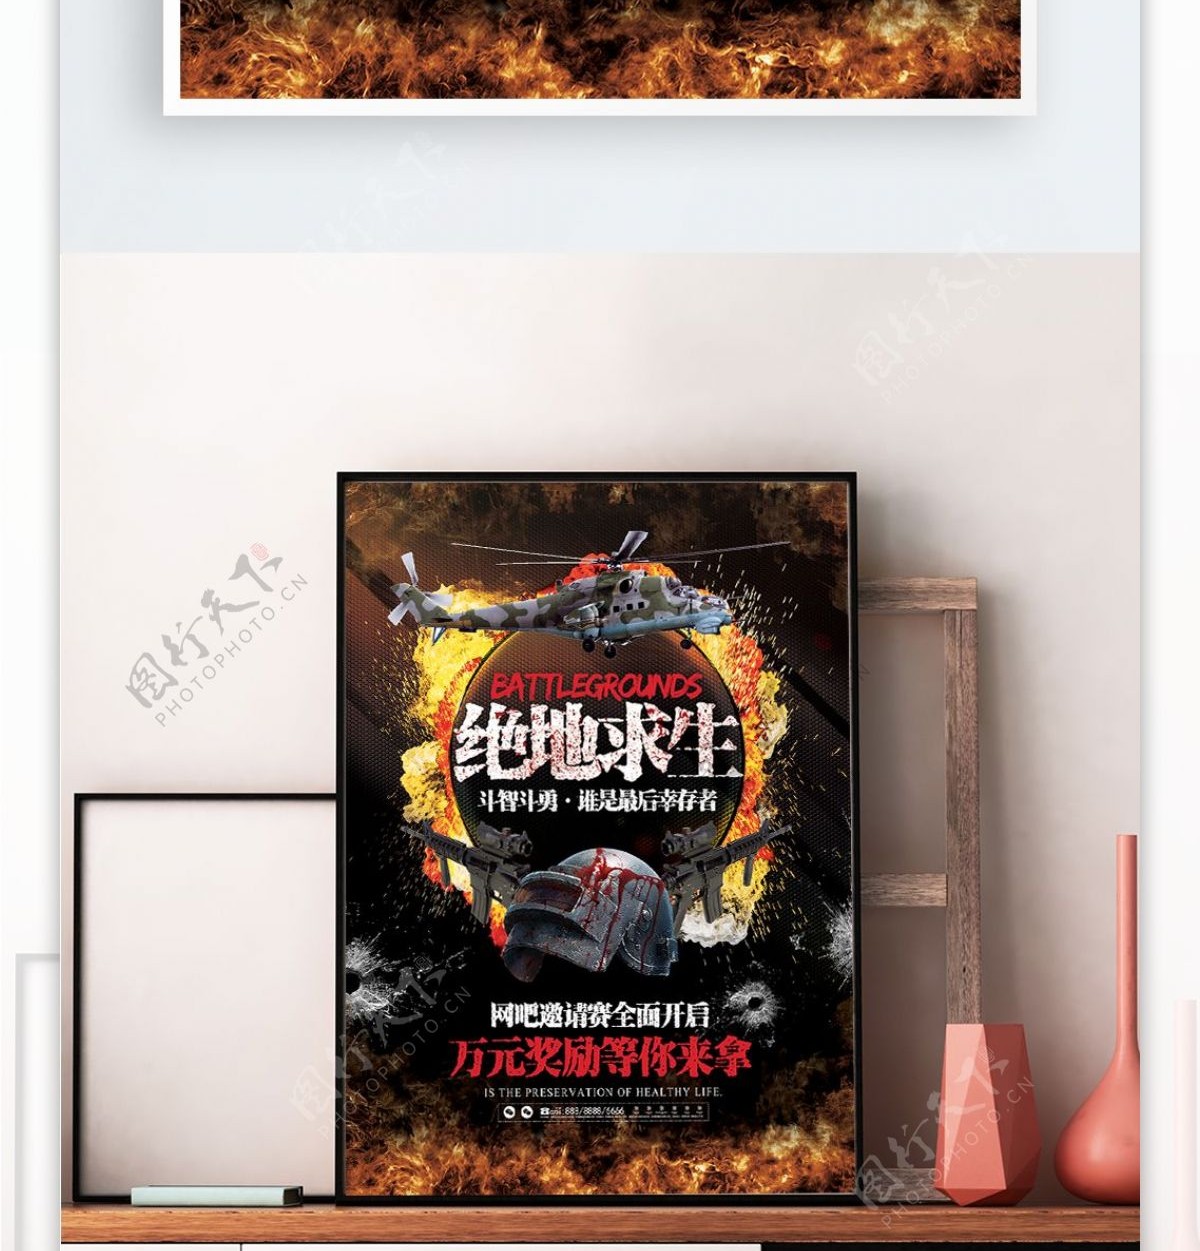 酷炫绝地求生游戏网吧邀请赛竞技海报展板